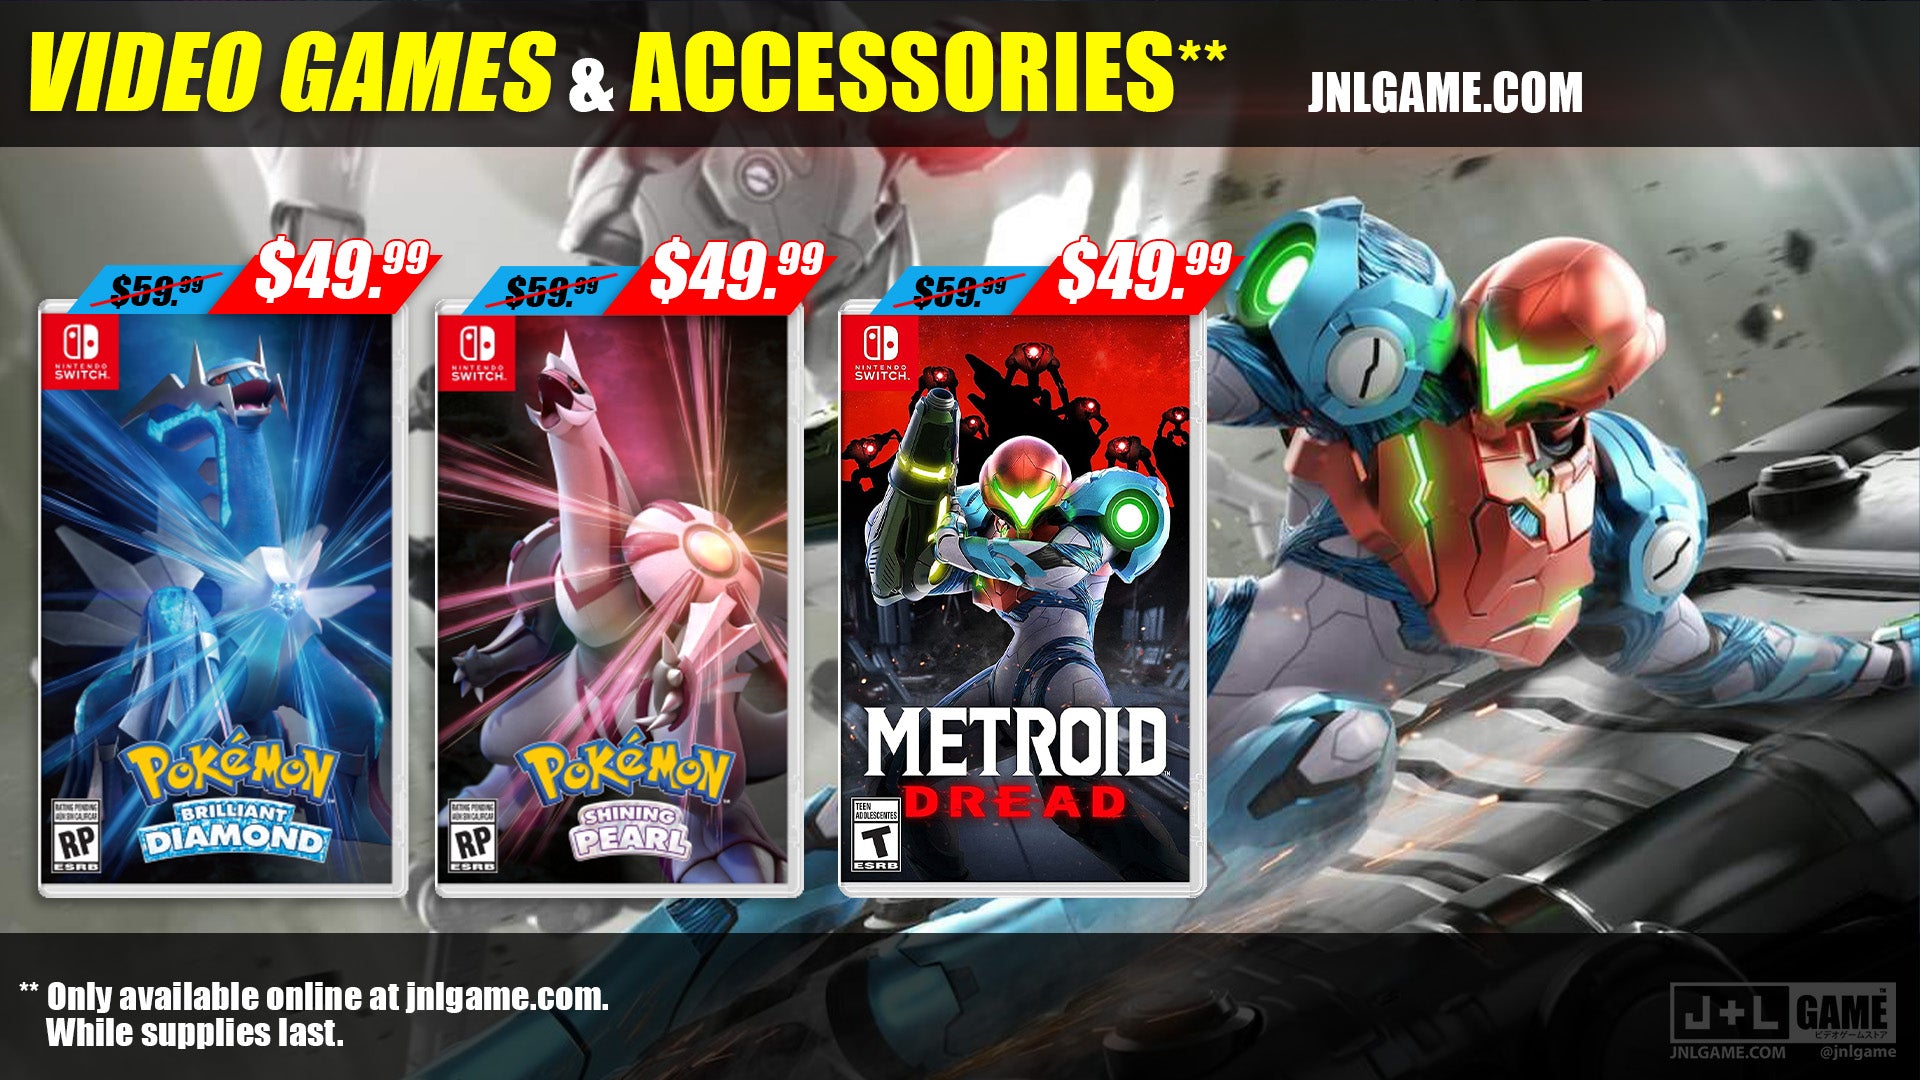 J&L Game Video Game & Accessories Sale